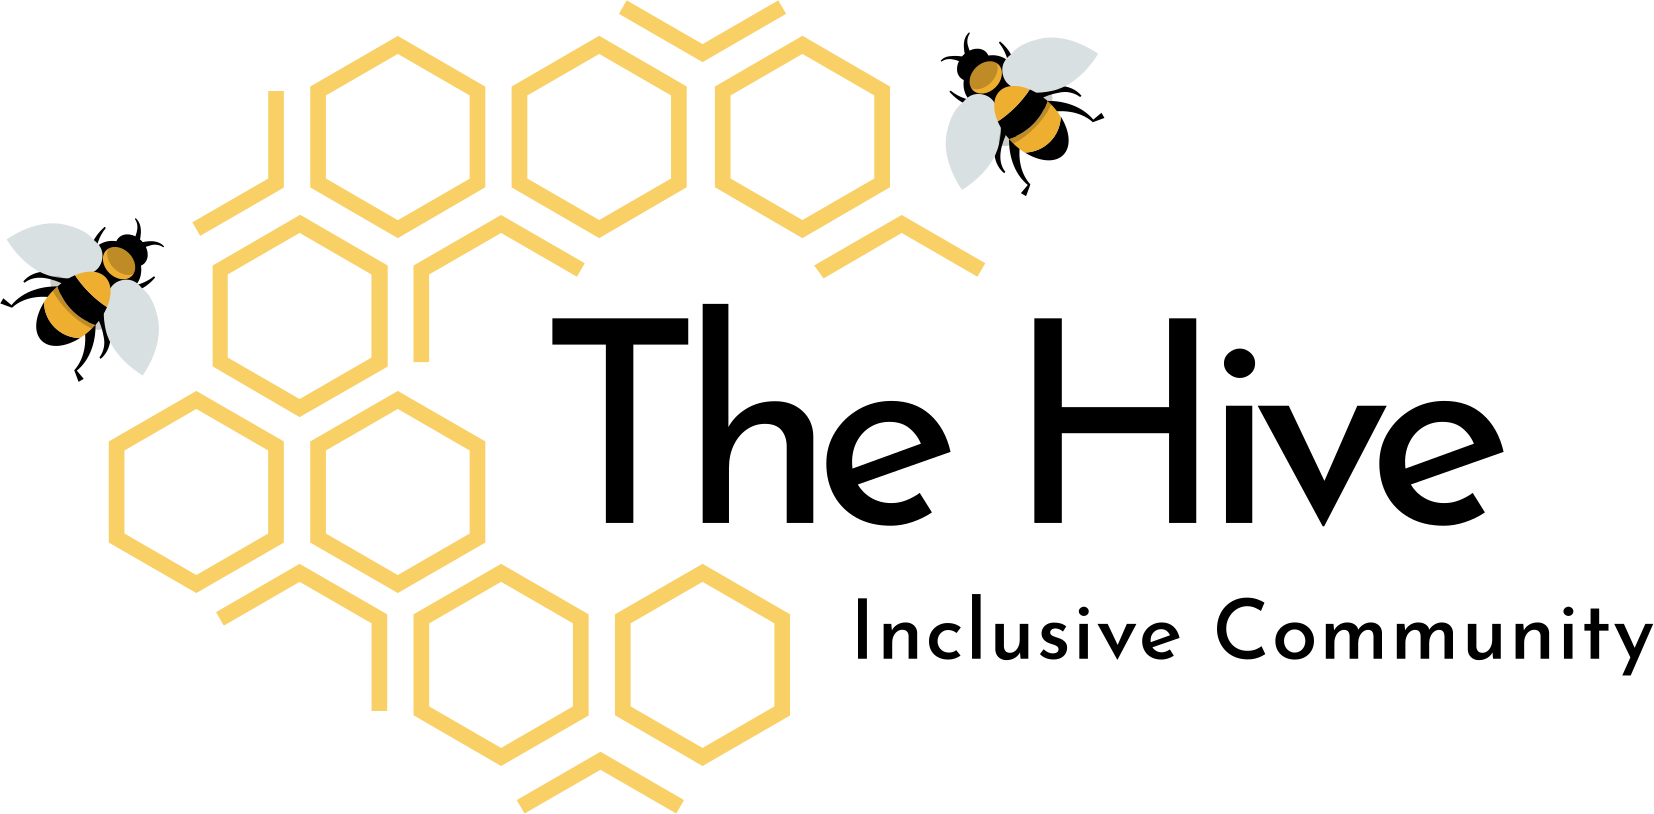 The Hive Inclusive Community